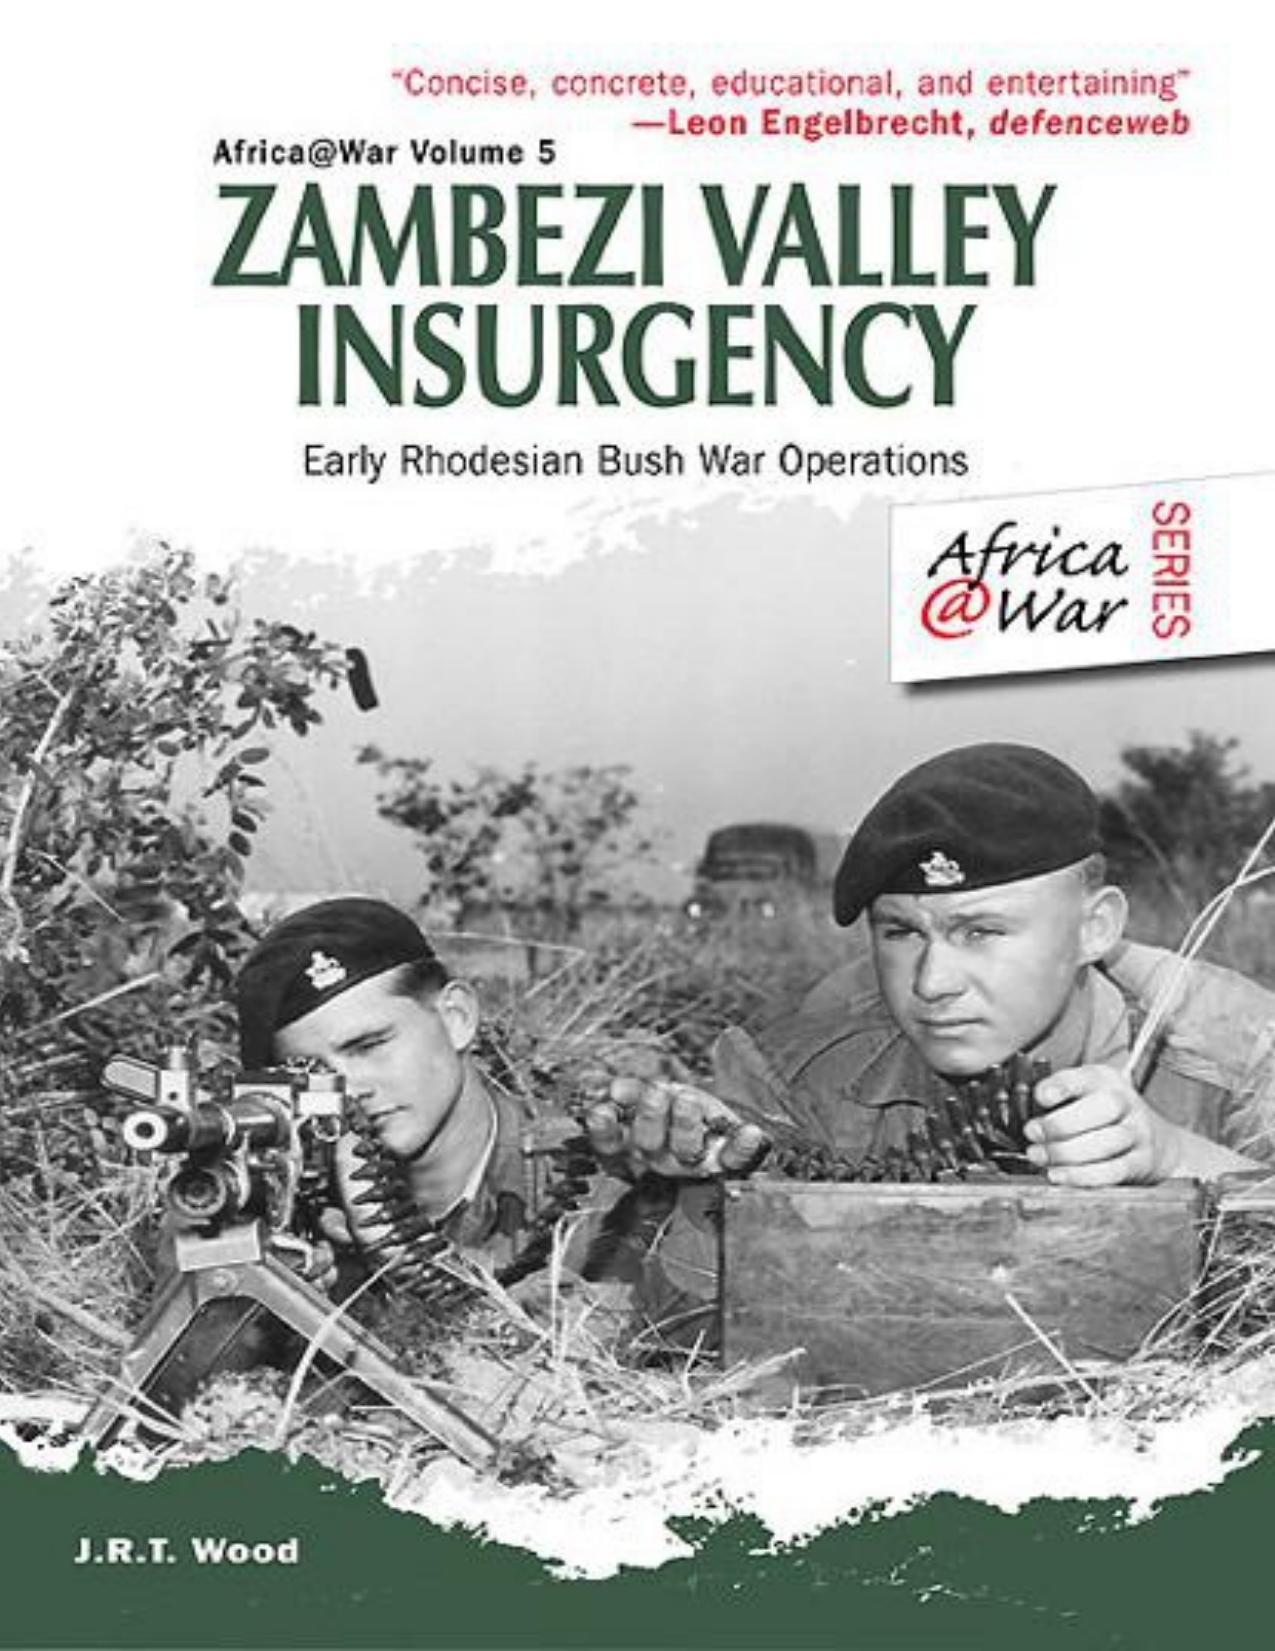 Zambezi Valley Insurgency: Early Rhodesian Bush War Operations by J. R. T. Wood